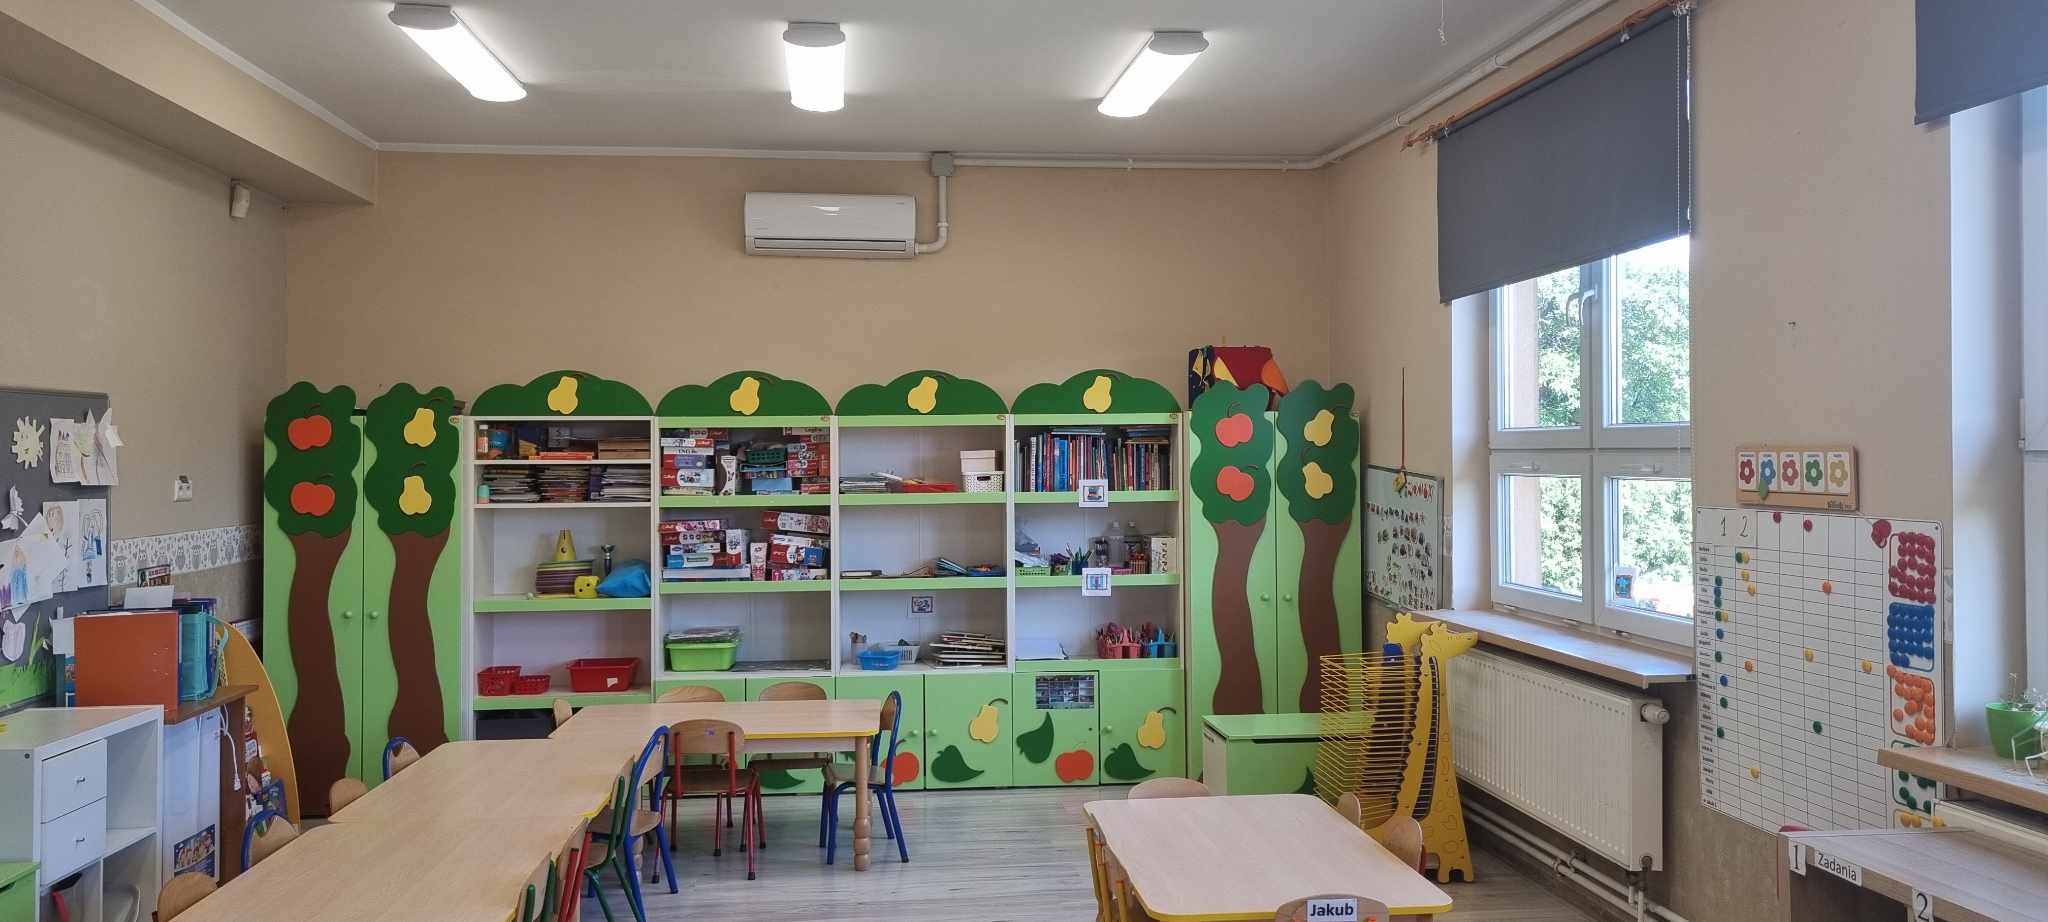 Na zdjęciu widać klasę przedszkolą z ławkami i krzesłami, kolorową ( z przewagą koloru zielonego) szafką na zabawki maluchów. W górnej części fotografii widać białą klimatyzację,a po prawej stronie - okna z ciemną roletą. 